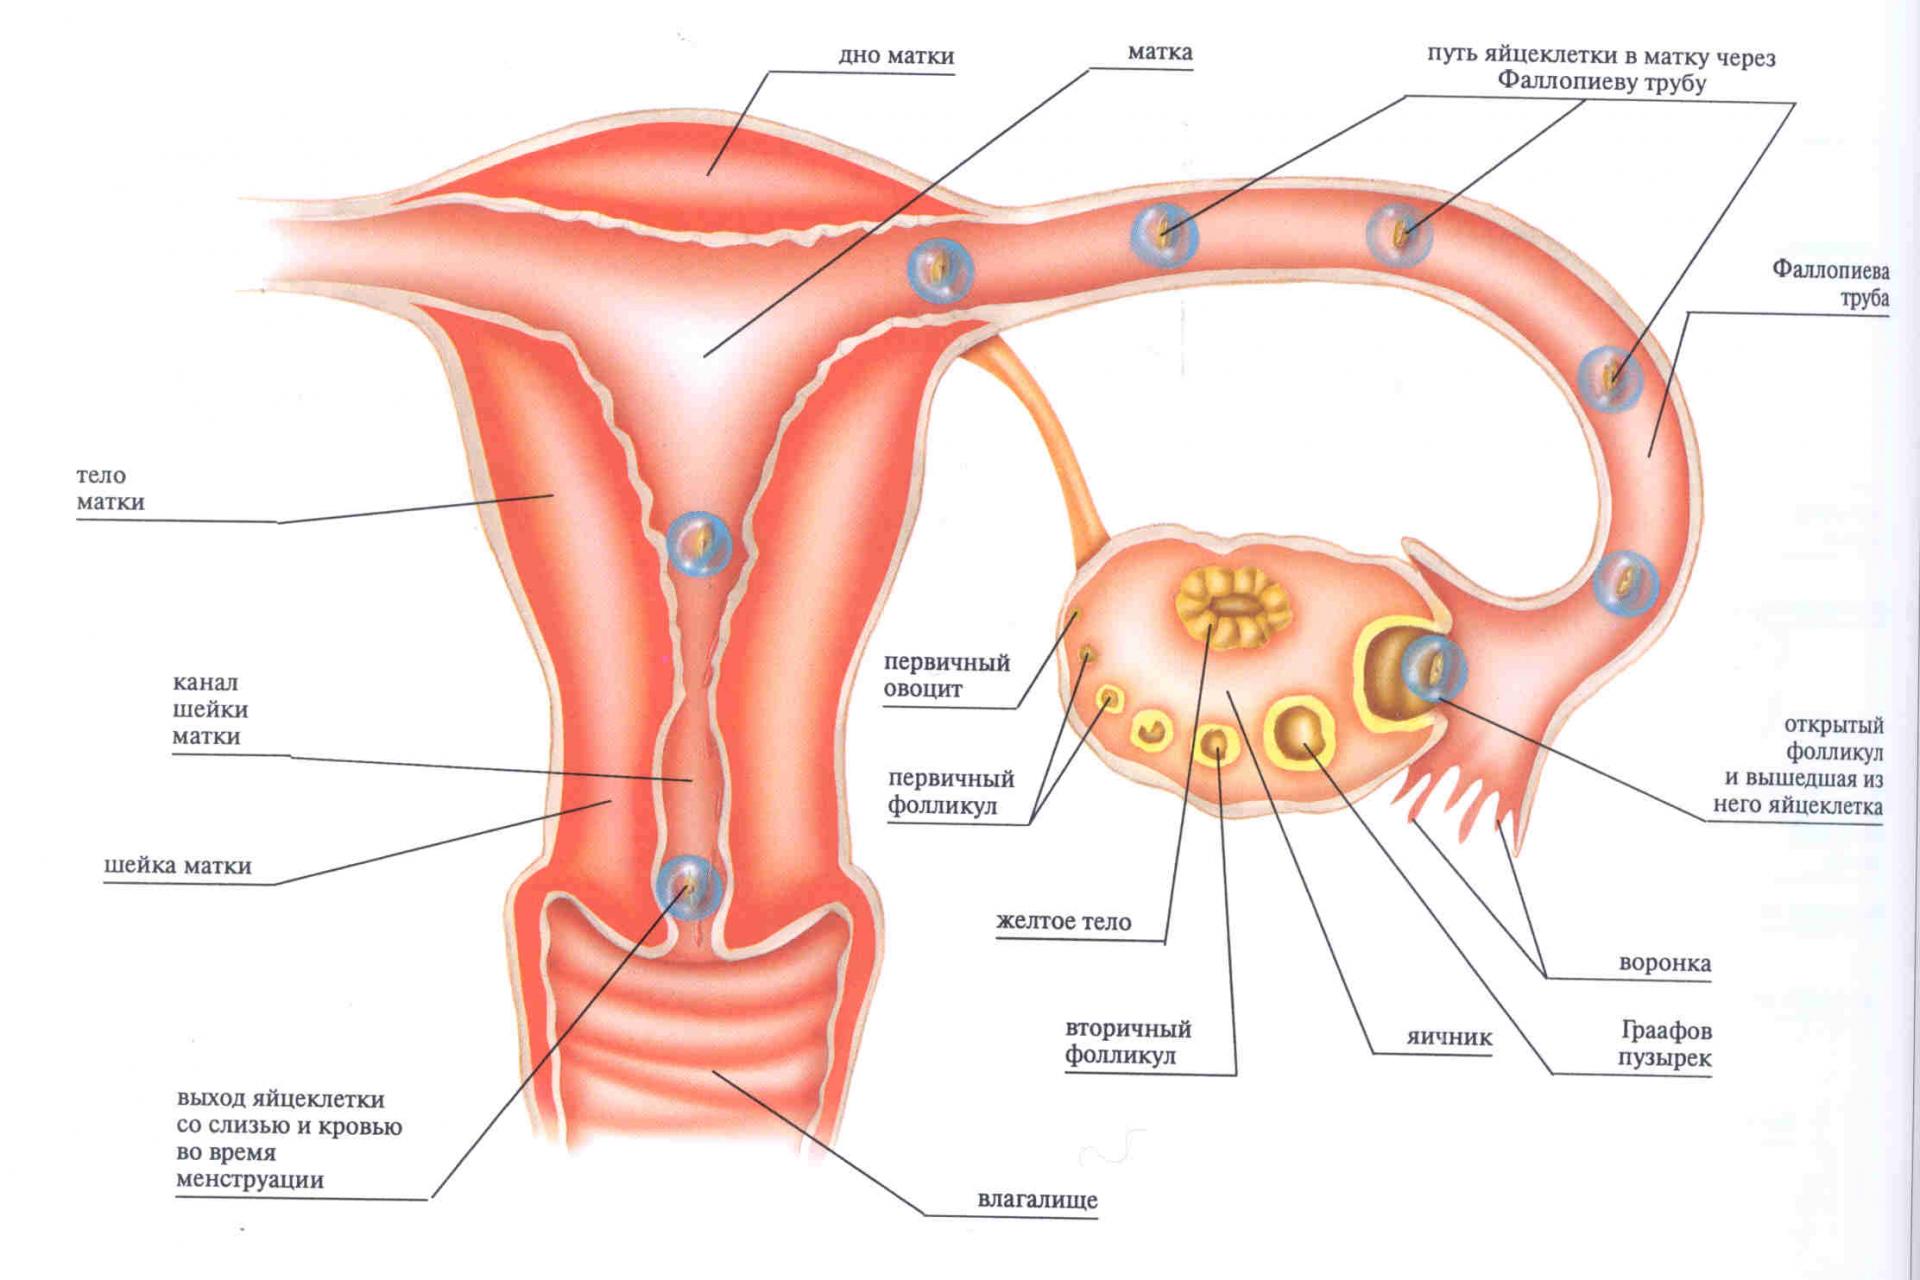 мужская сперма и ее влияние на женский организм фото 87